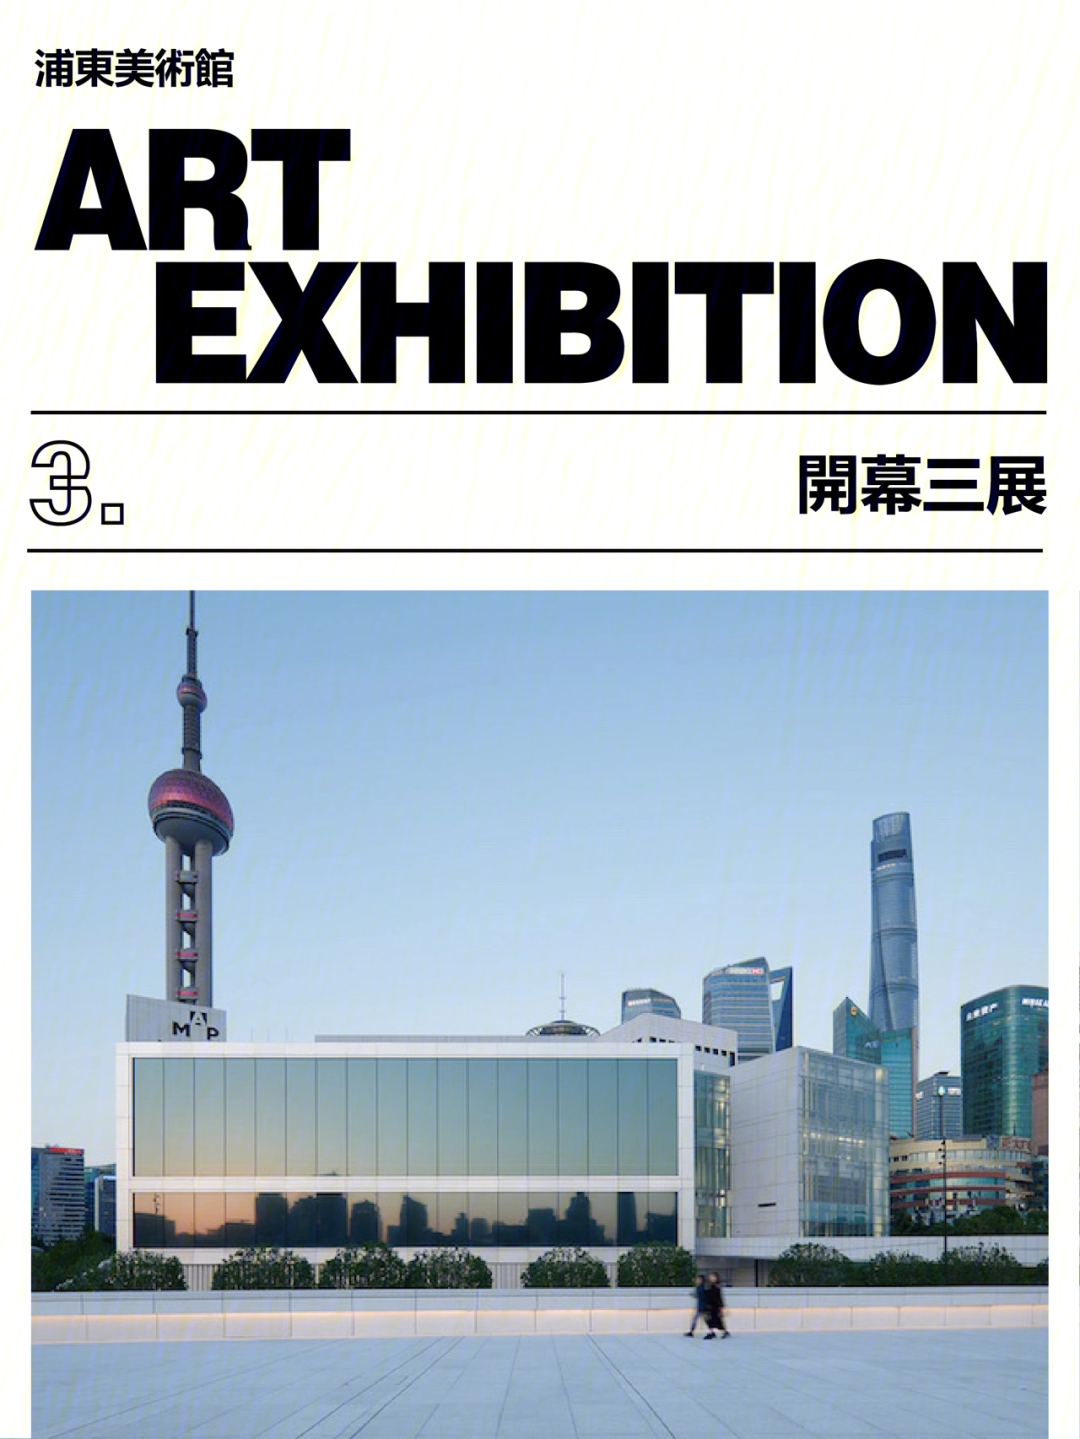 上海浦东美术馆门票图片